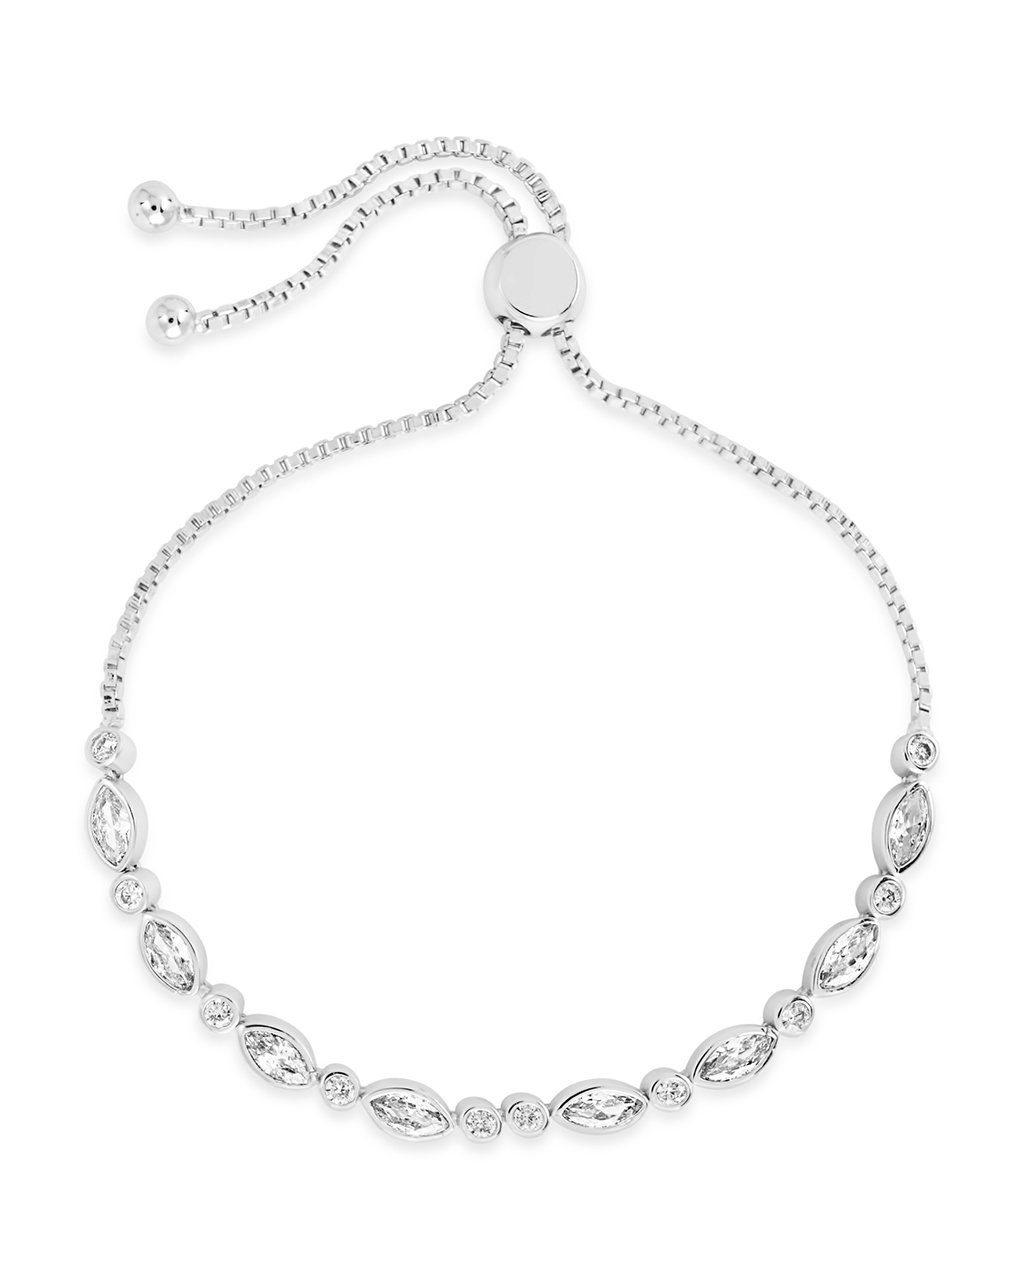 Silver Hearts Slider Bracelet - De'paul Jewellery | Pinner